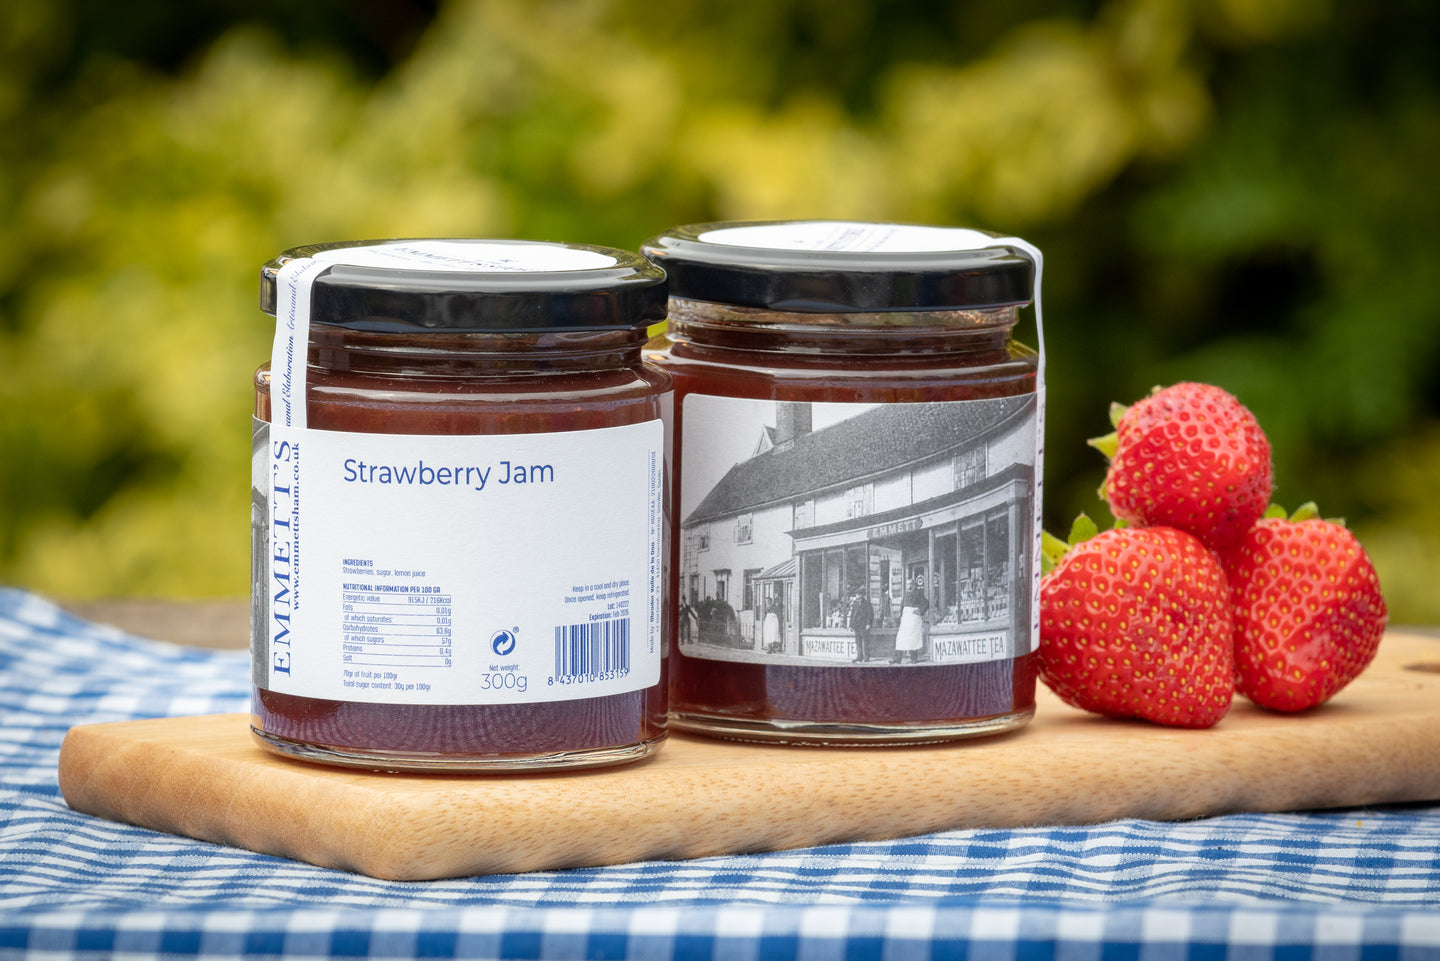 Strawberry Jam - Emmett's